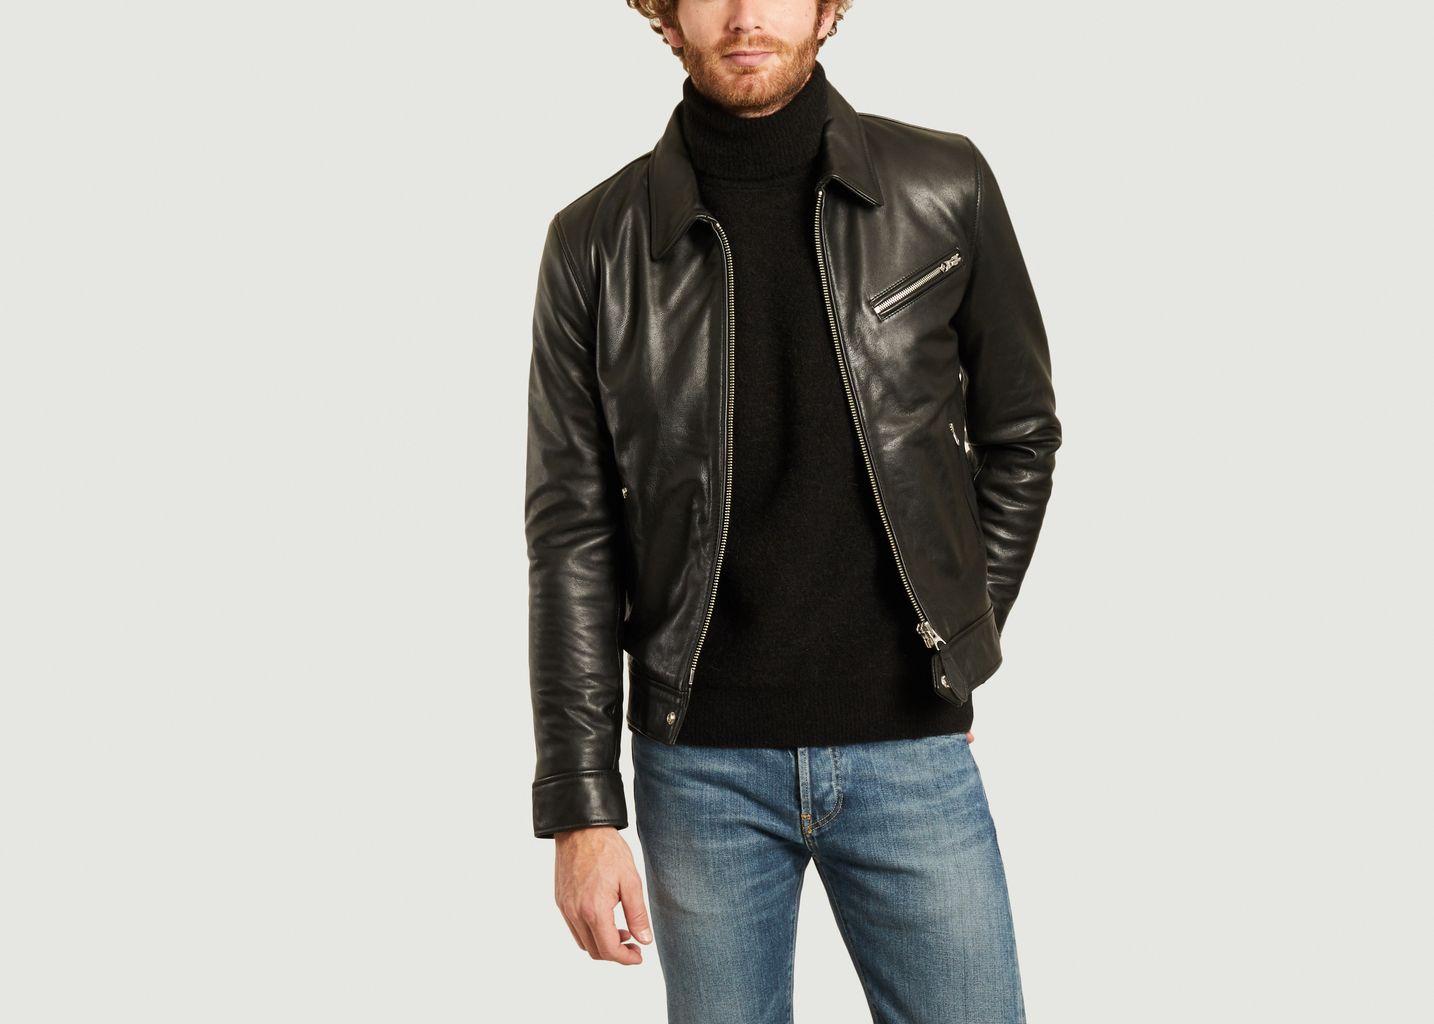 Montana leather jacket - Schott NYC